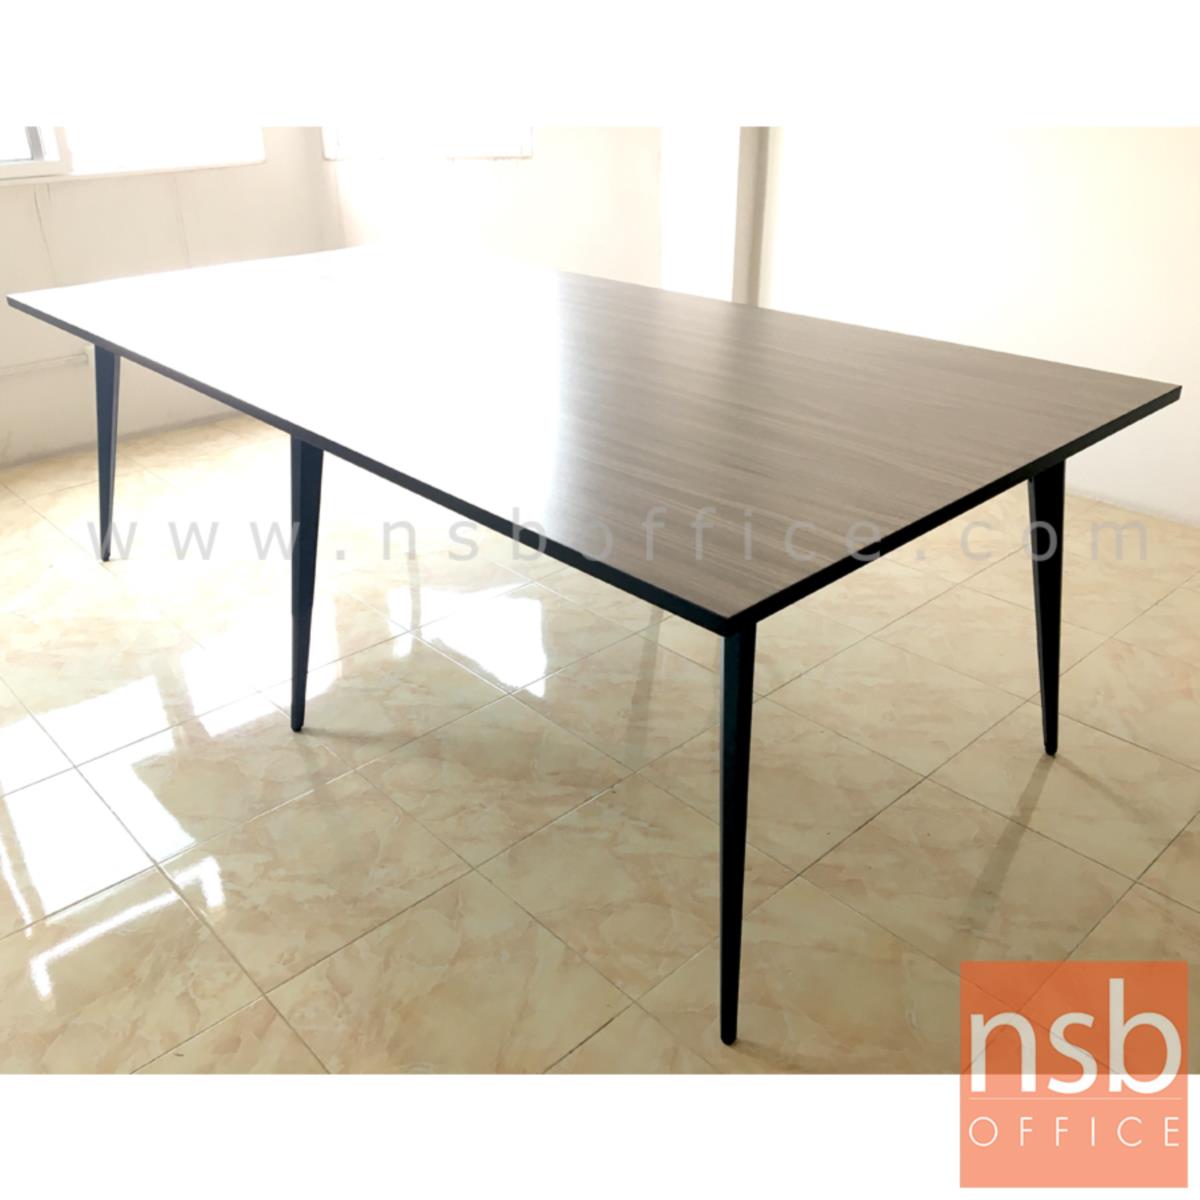 โต๊ะประชุมทรงสี่เหลี่ยม รุ่น SKYLINE ขนาด 240W cm. ขาปลายเรียวหกเหลี่ยม สีเทาฟ้า